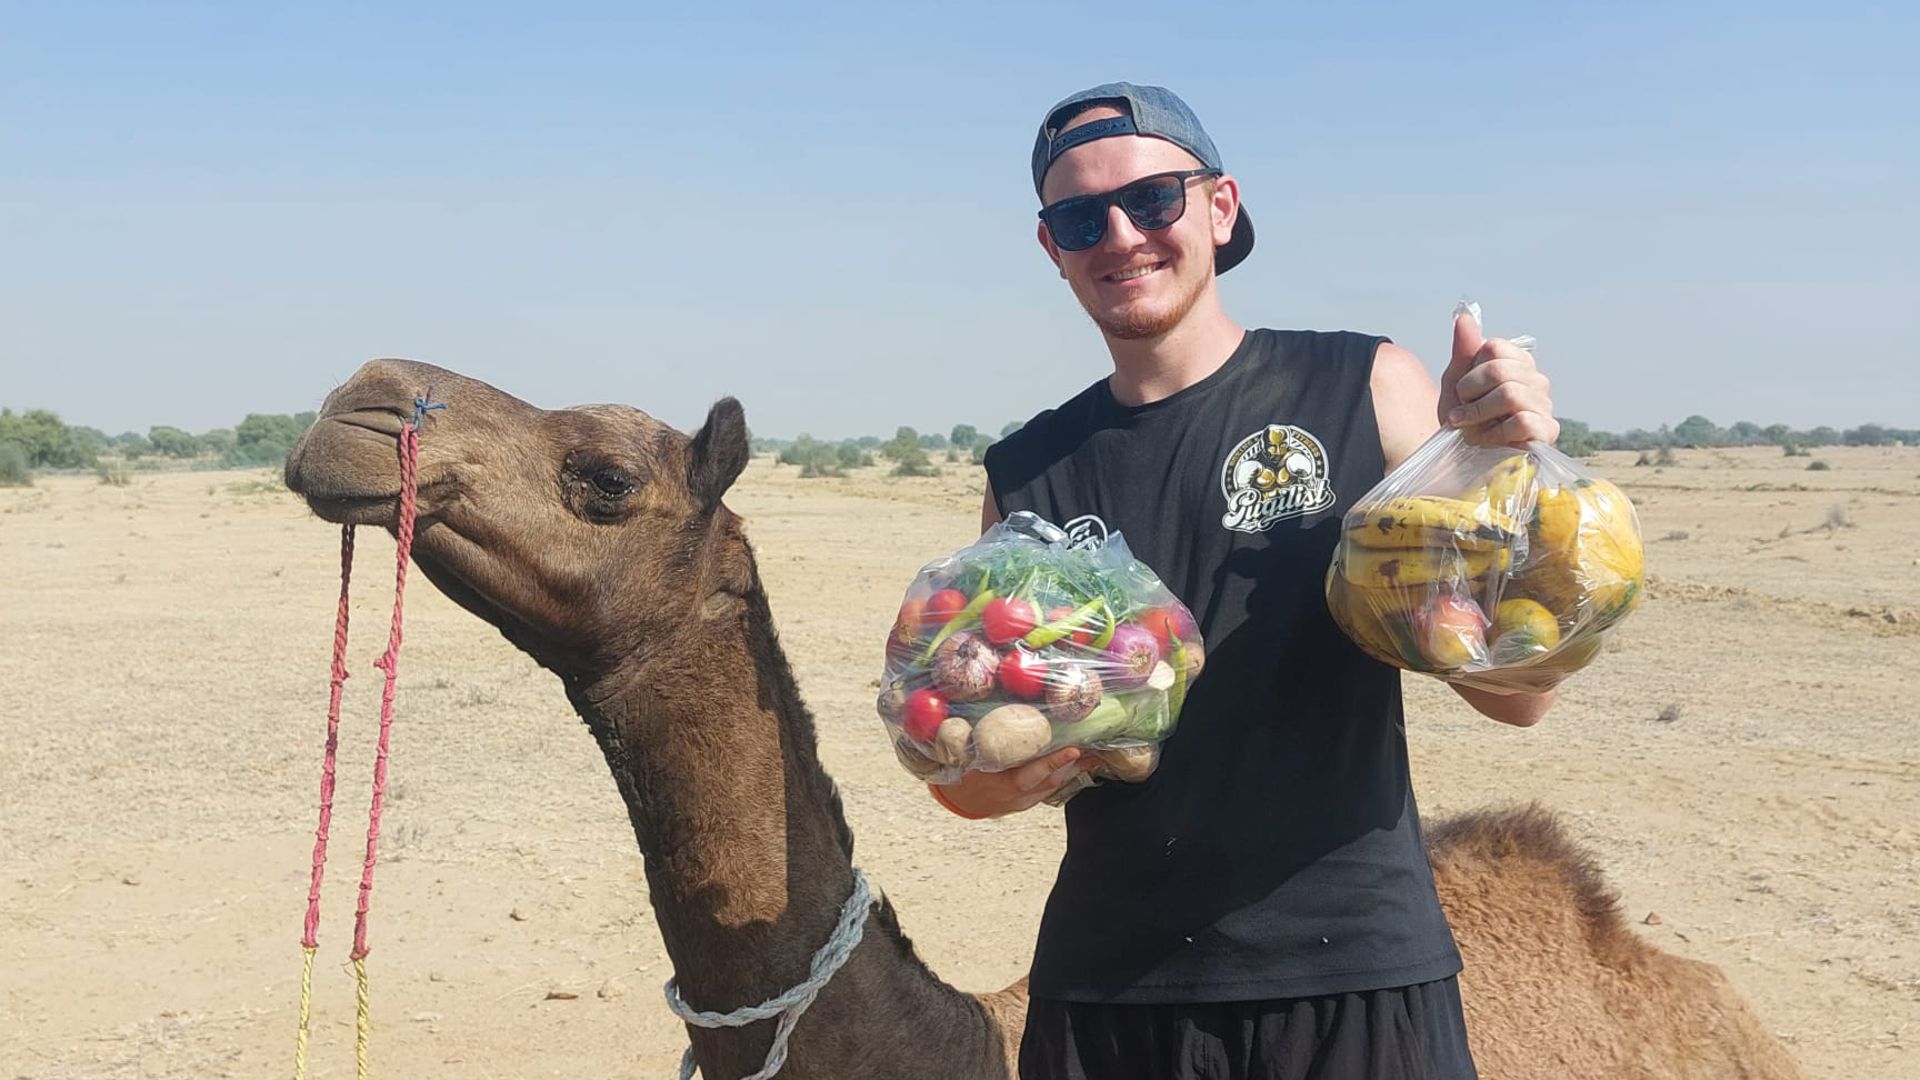 In Indien ist Marius Neumann auch auf einer Safari durch die Wüste unterwegs